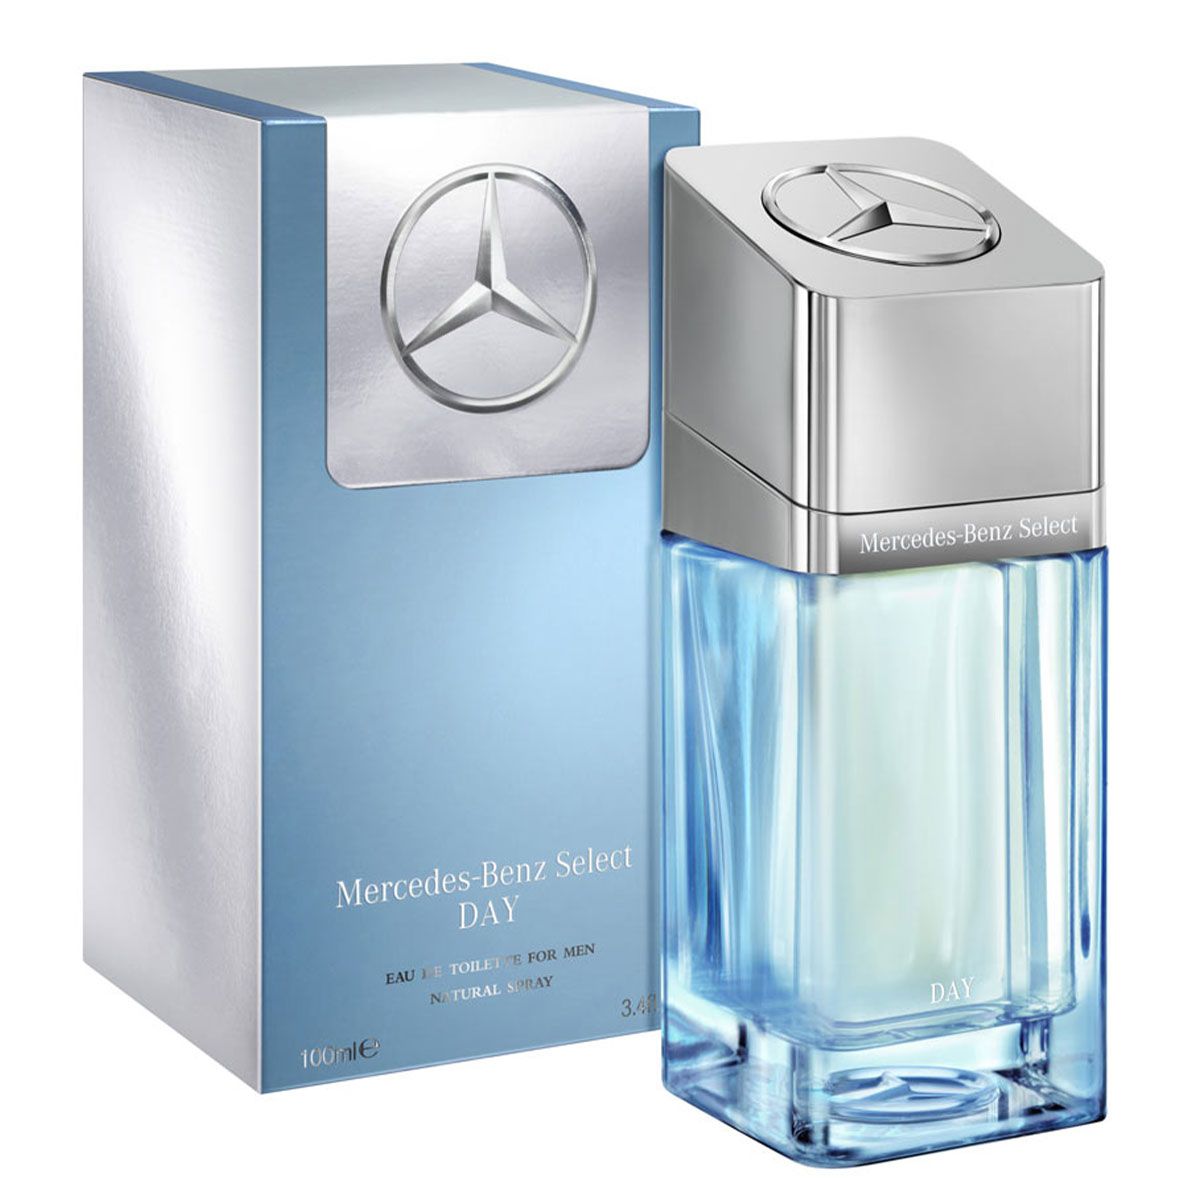  Mercedes Benz Select Day Eau de Toilette for Men 